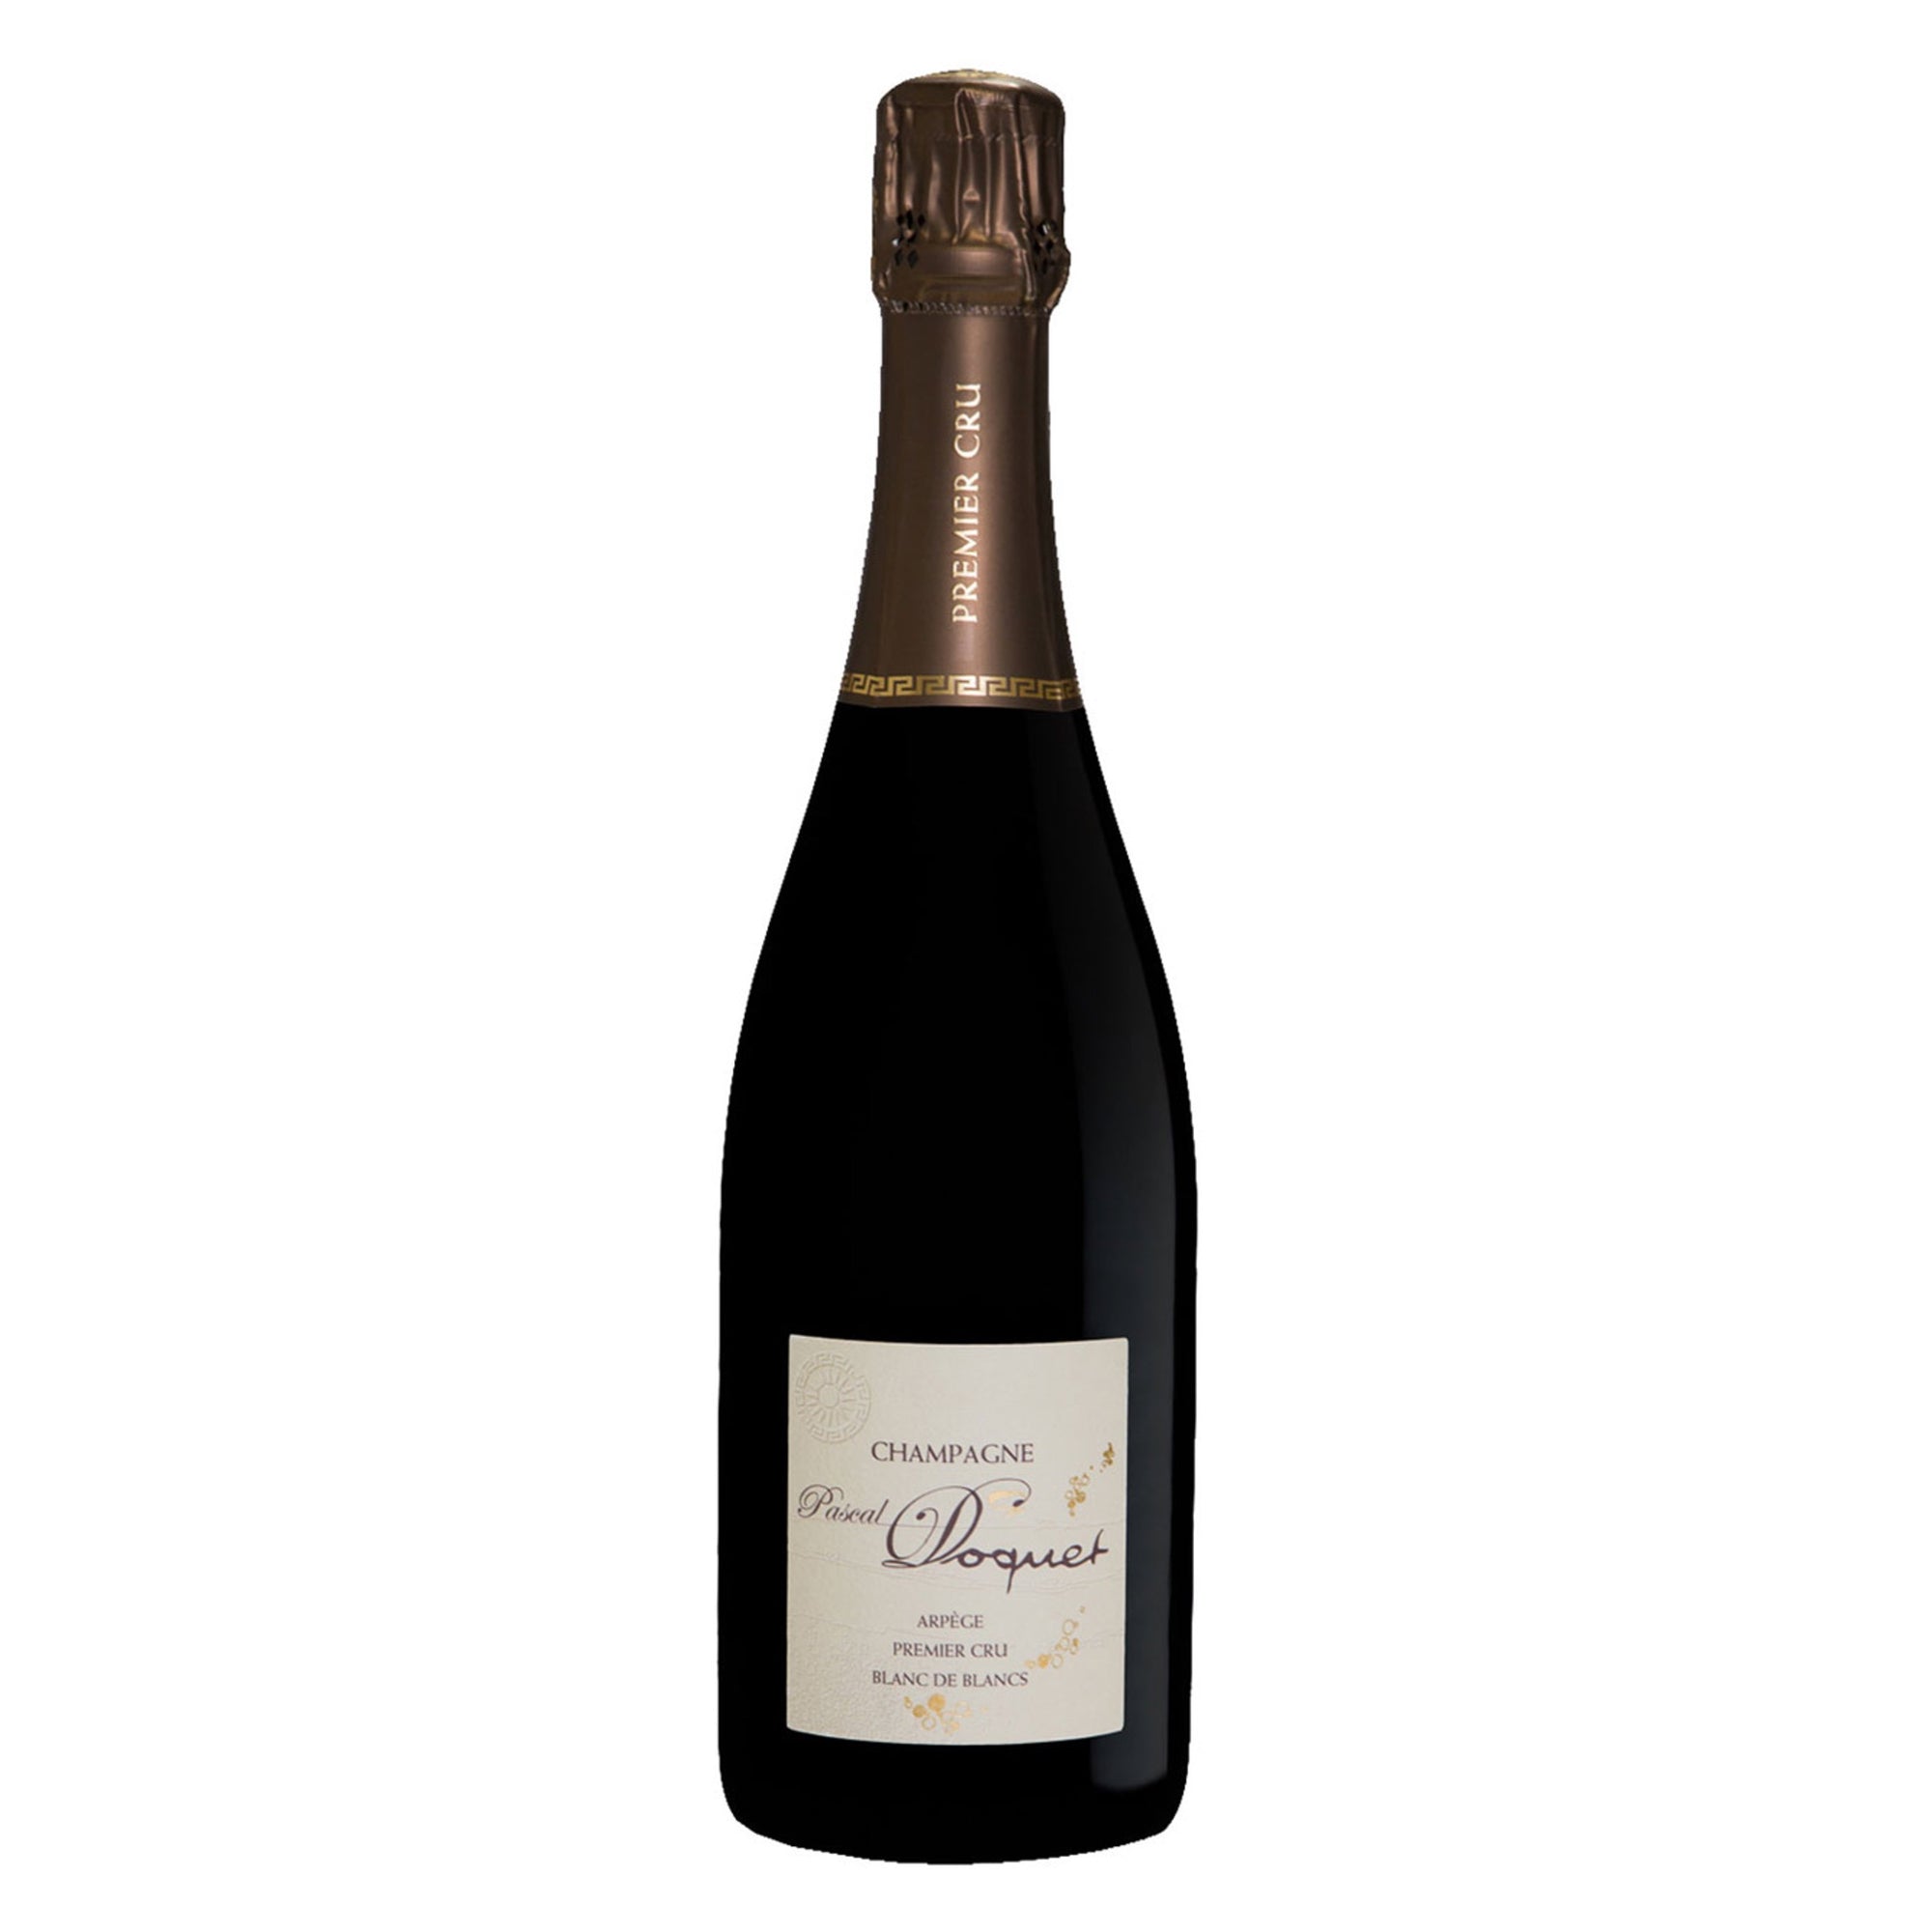 PASCAL DOQUET Champagne 1er Cru Brut Nature "Arpege" NV